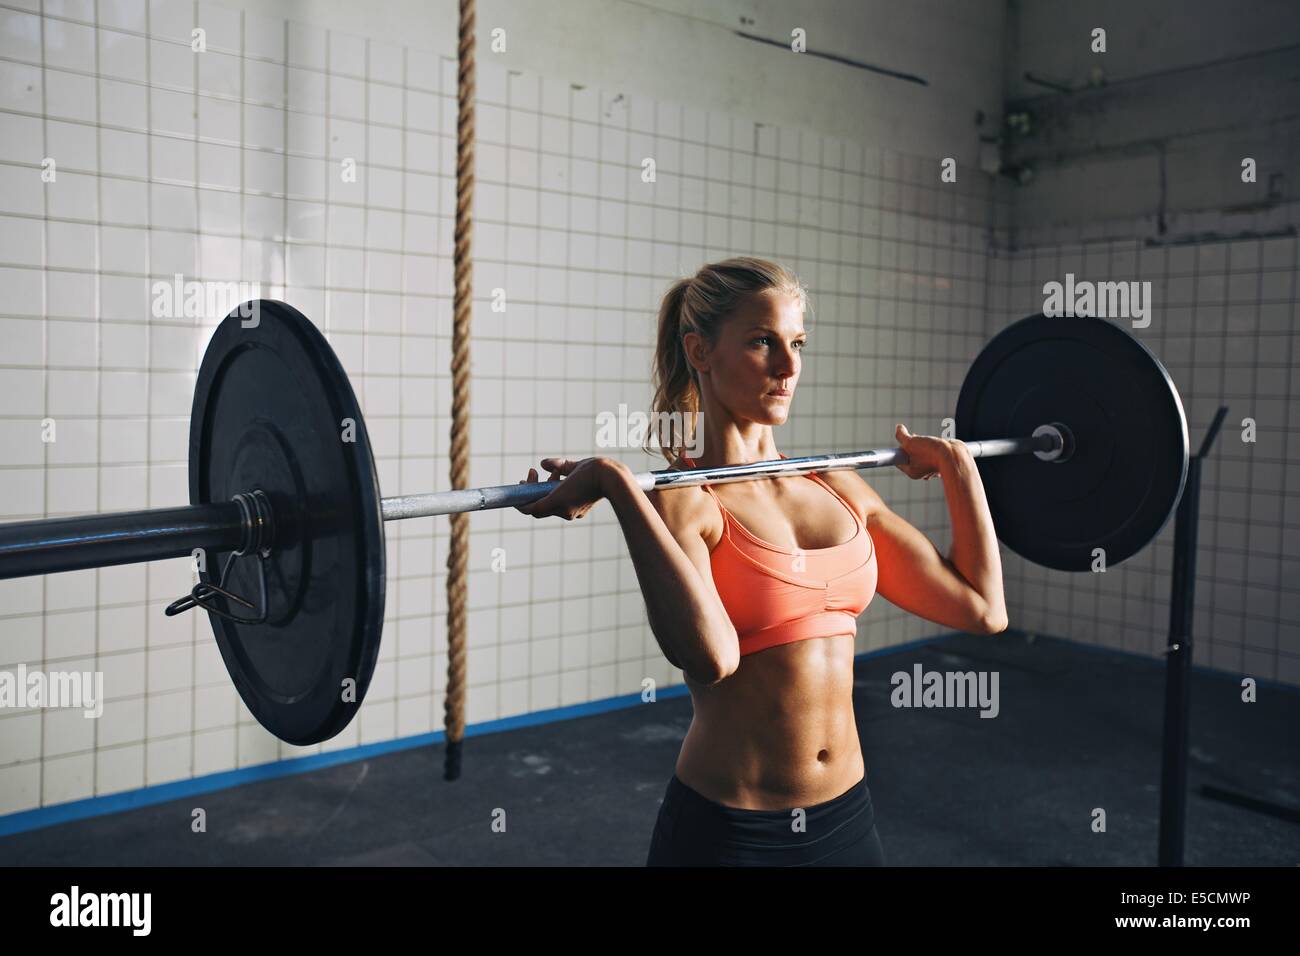 Fitness-Frau konzentriert sich beim Heben der Hanteln. Starke Frau im Crossfit Gym Gewichte zu heben. Kaukasische weibliches Modell mit mu Stockfoto